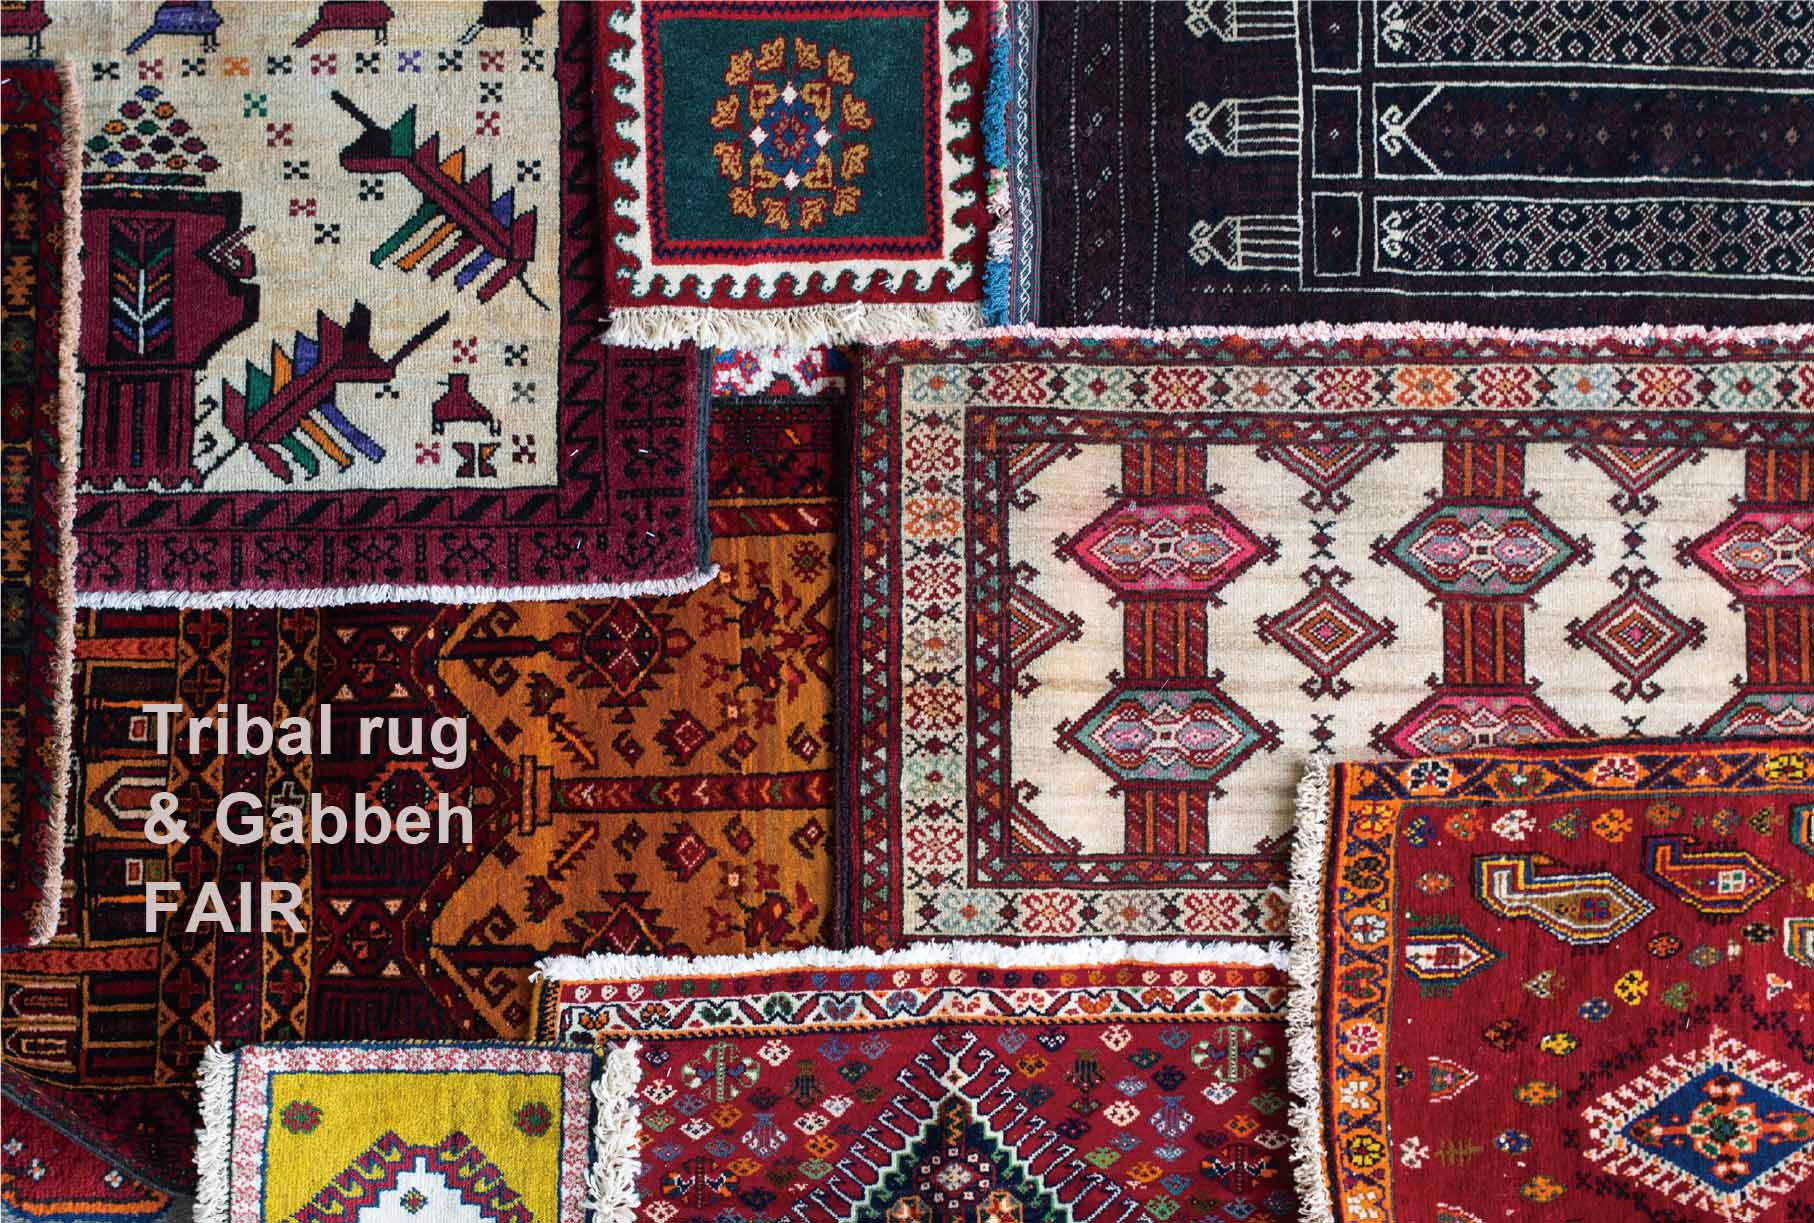 Tribal rug & Gabbeh FAIR